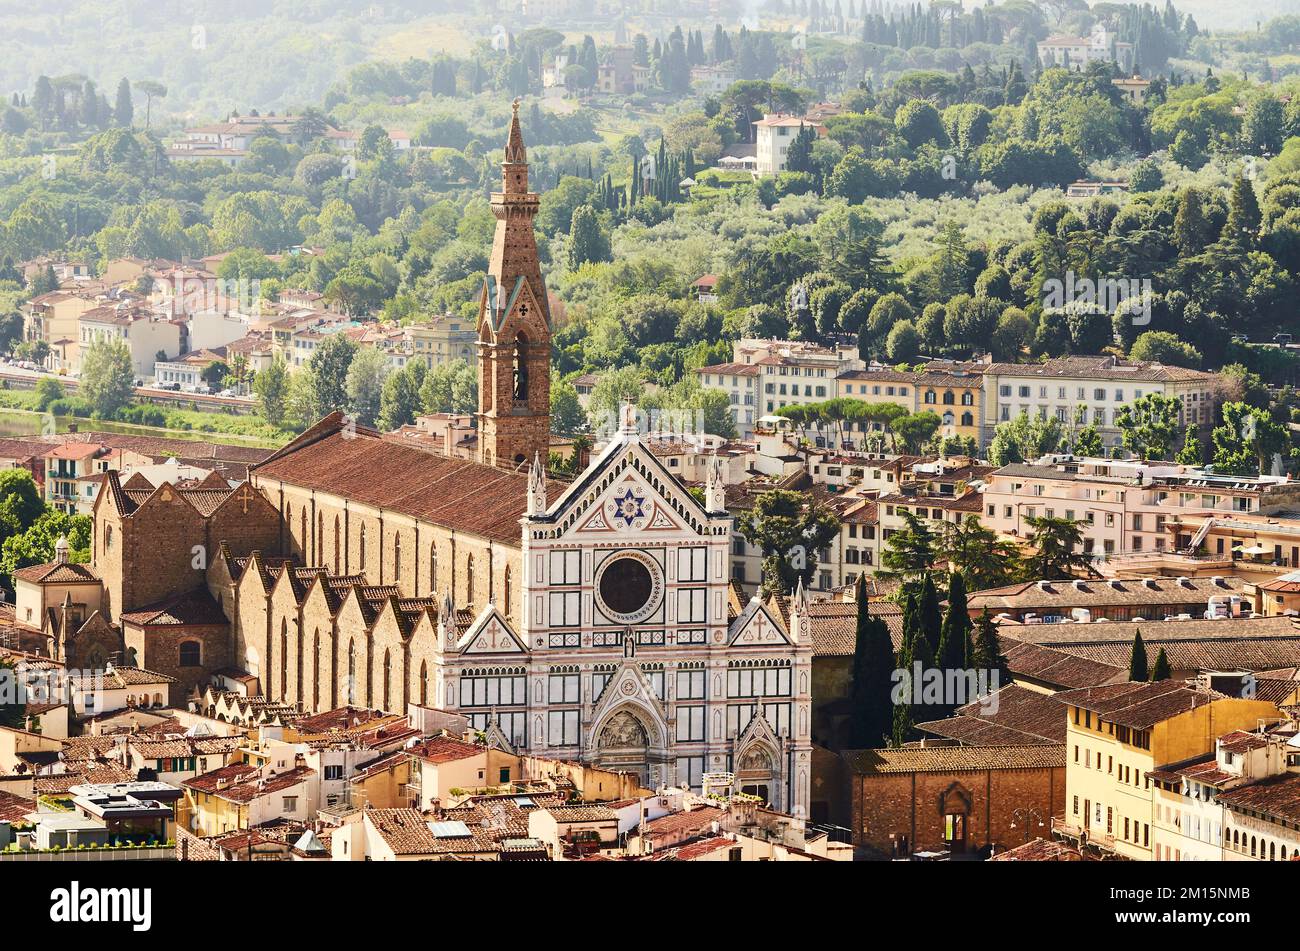 La basílica de Santa Croce, desde arriba, Florencia, Italia. Foto de stock